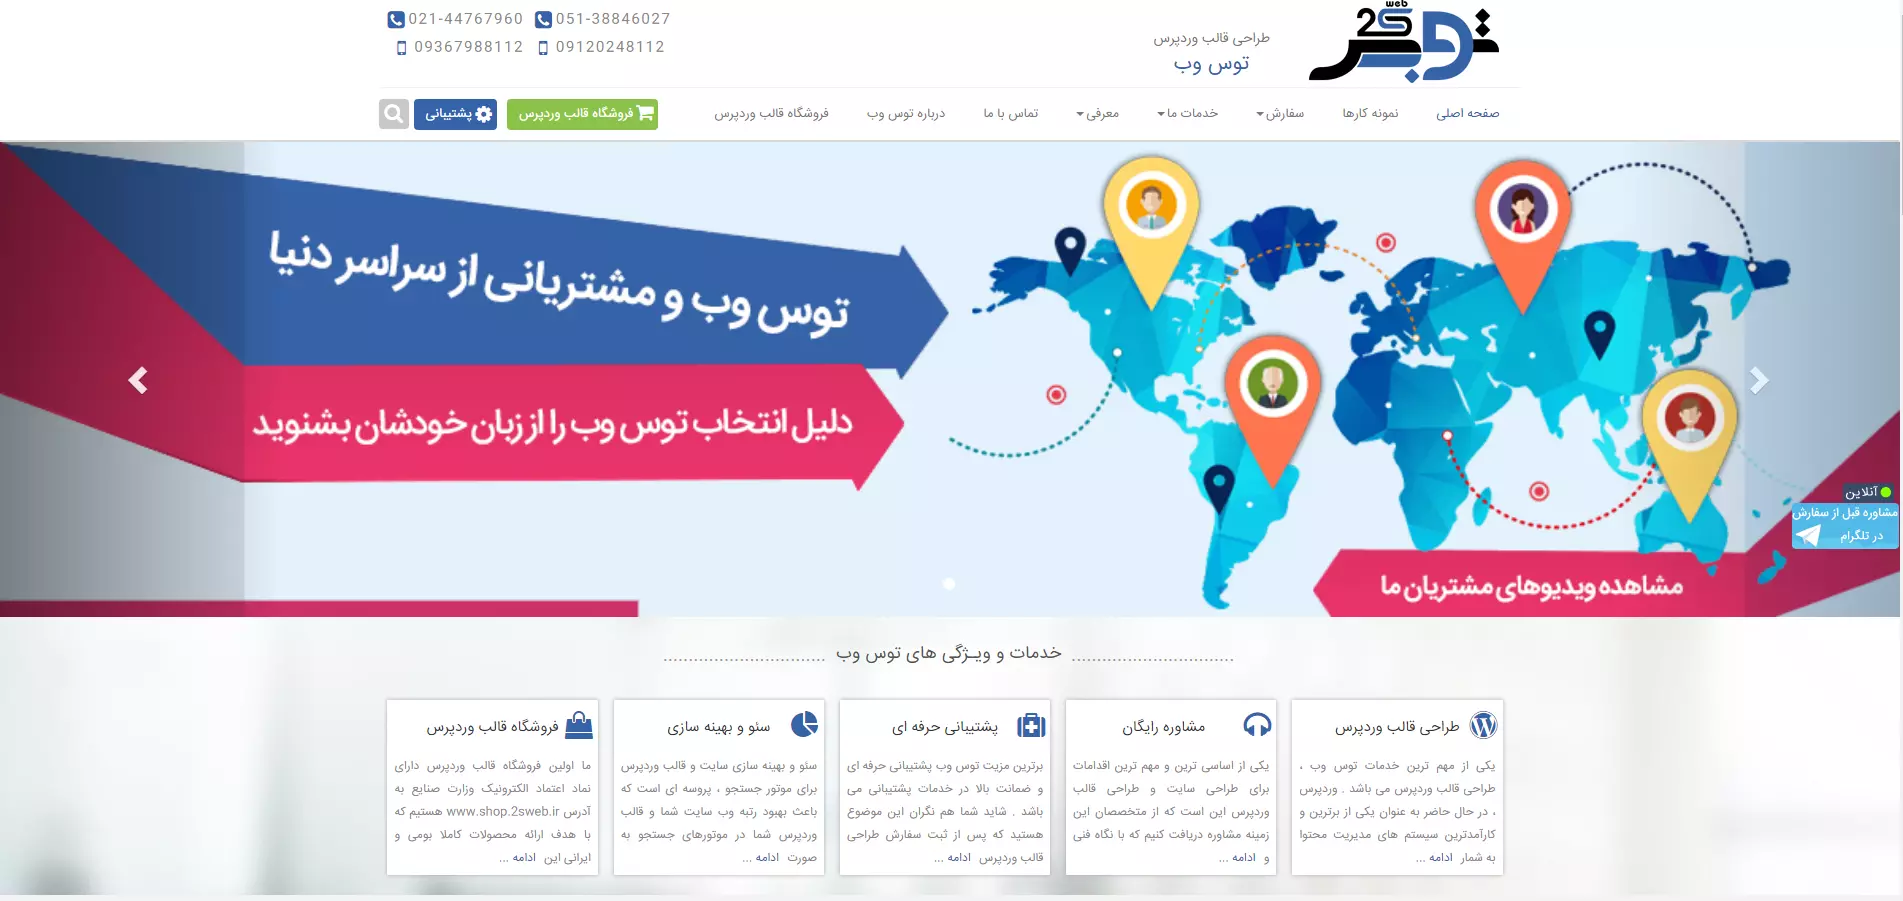 مرکز طراحی سایت در مشهد - توس وب